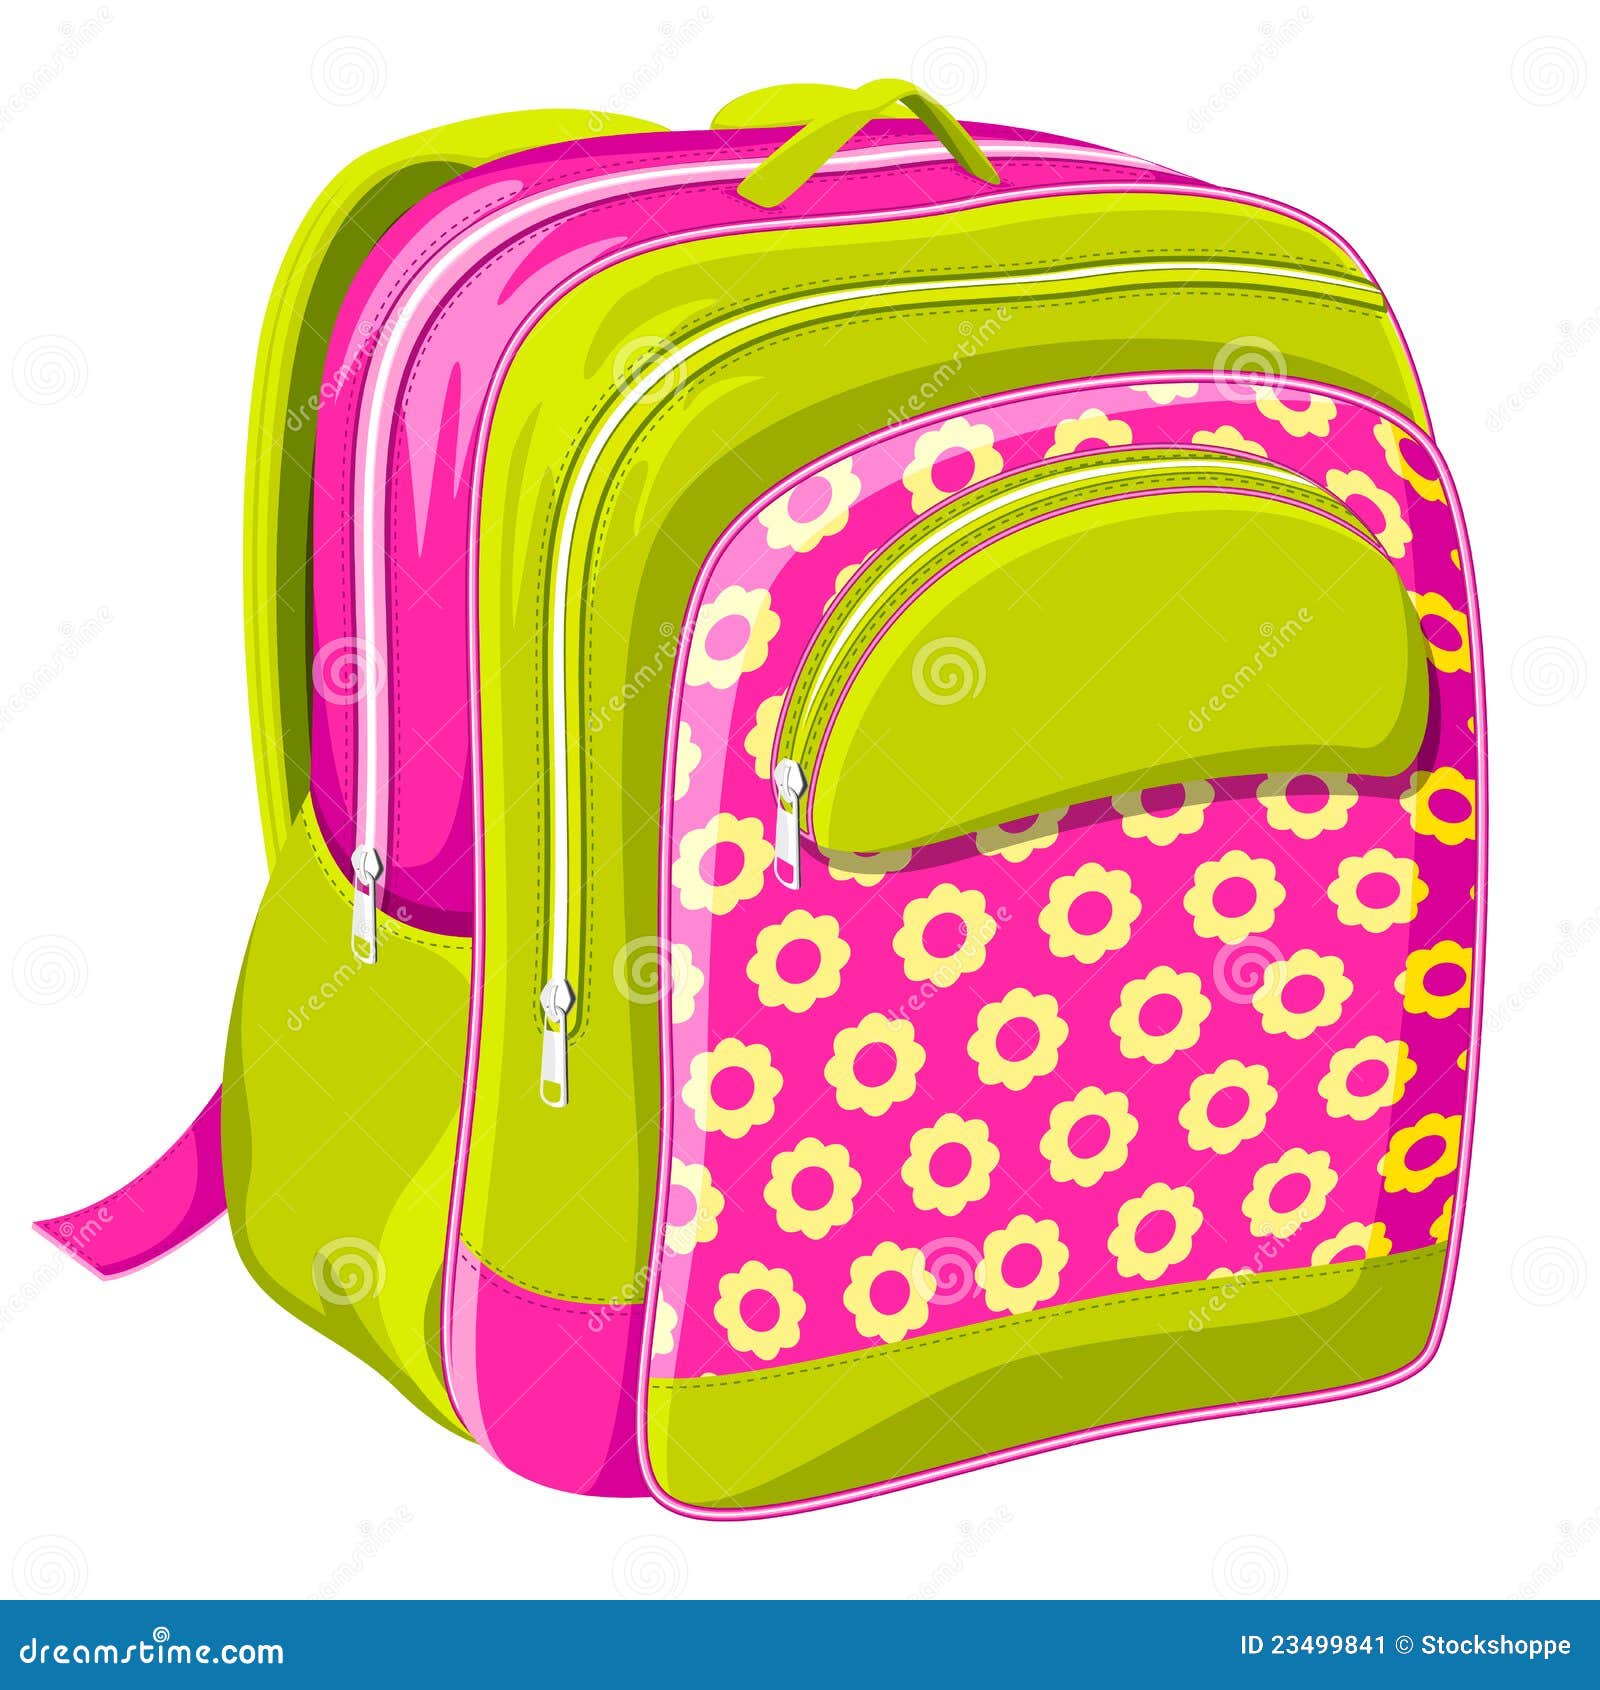 school bag clipart